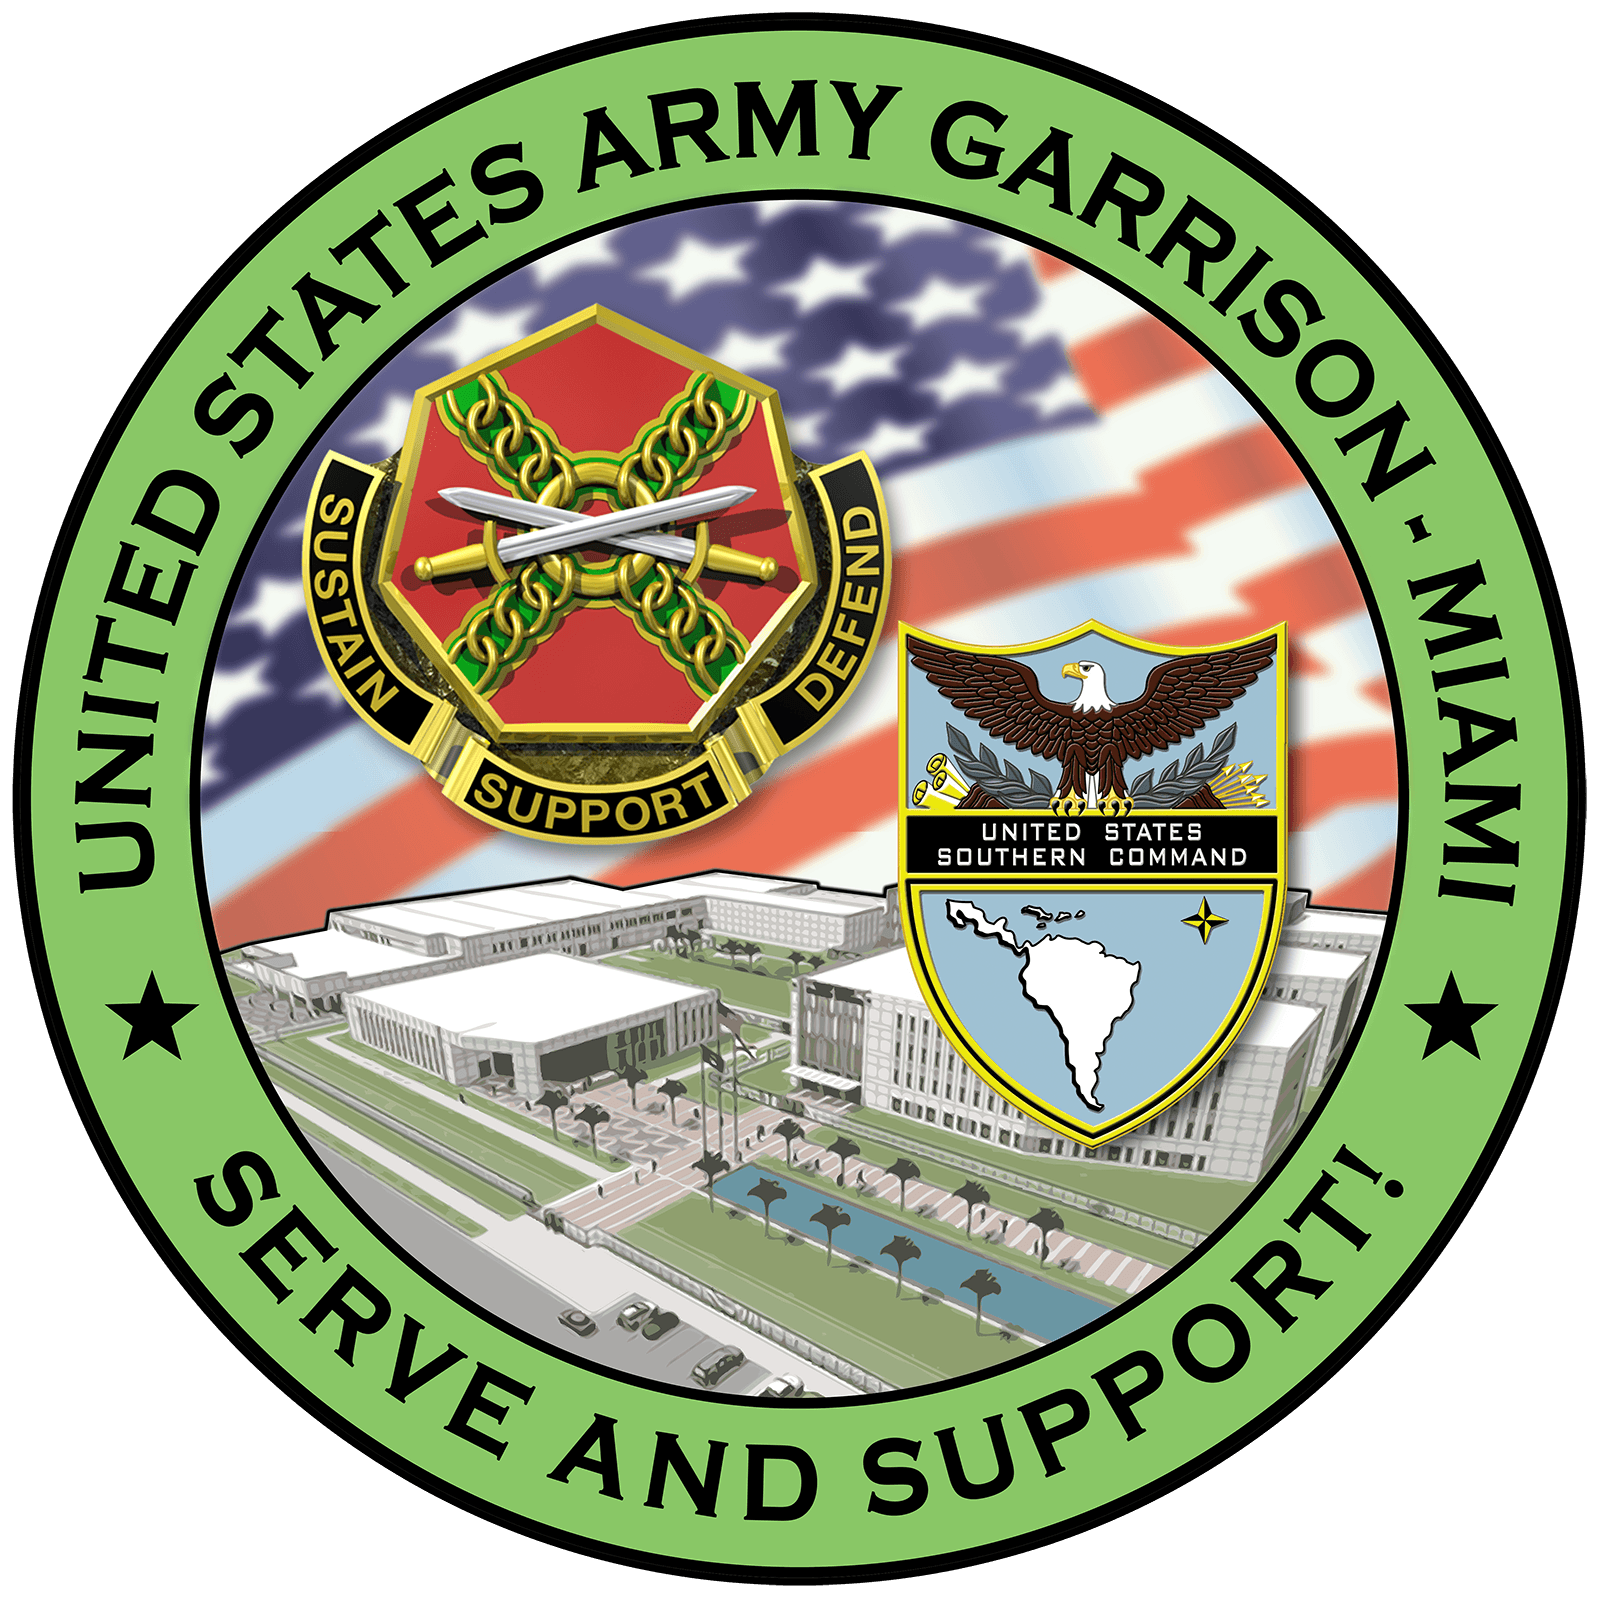 IMCOM Logo - U.S. Army Garrison Miami